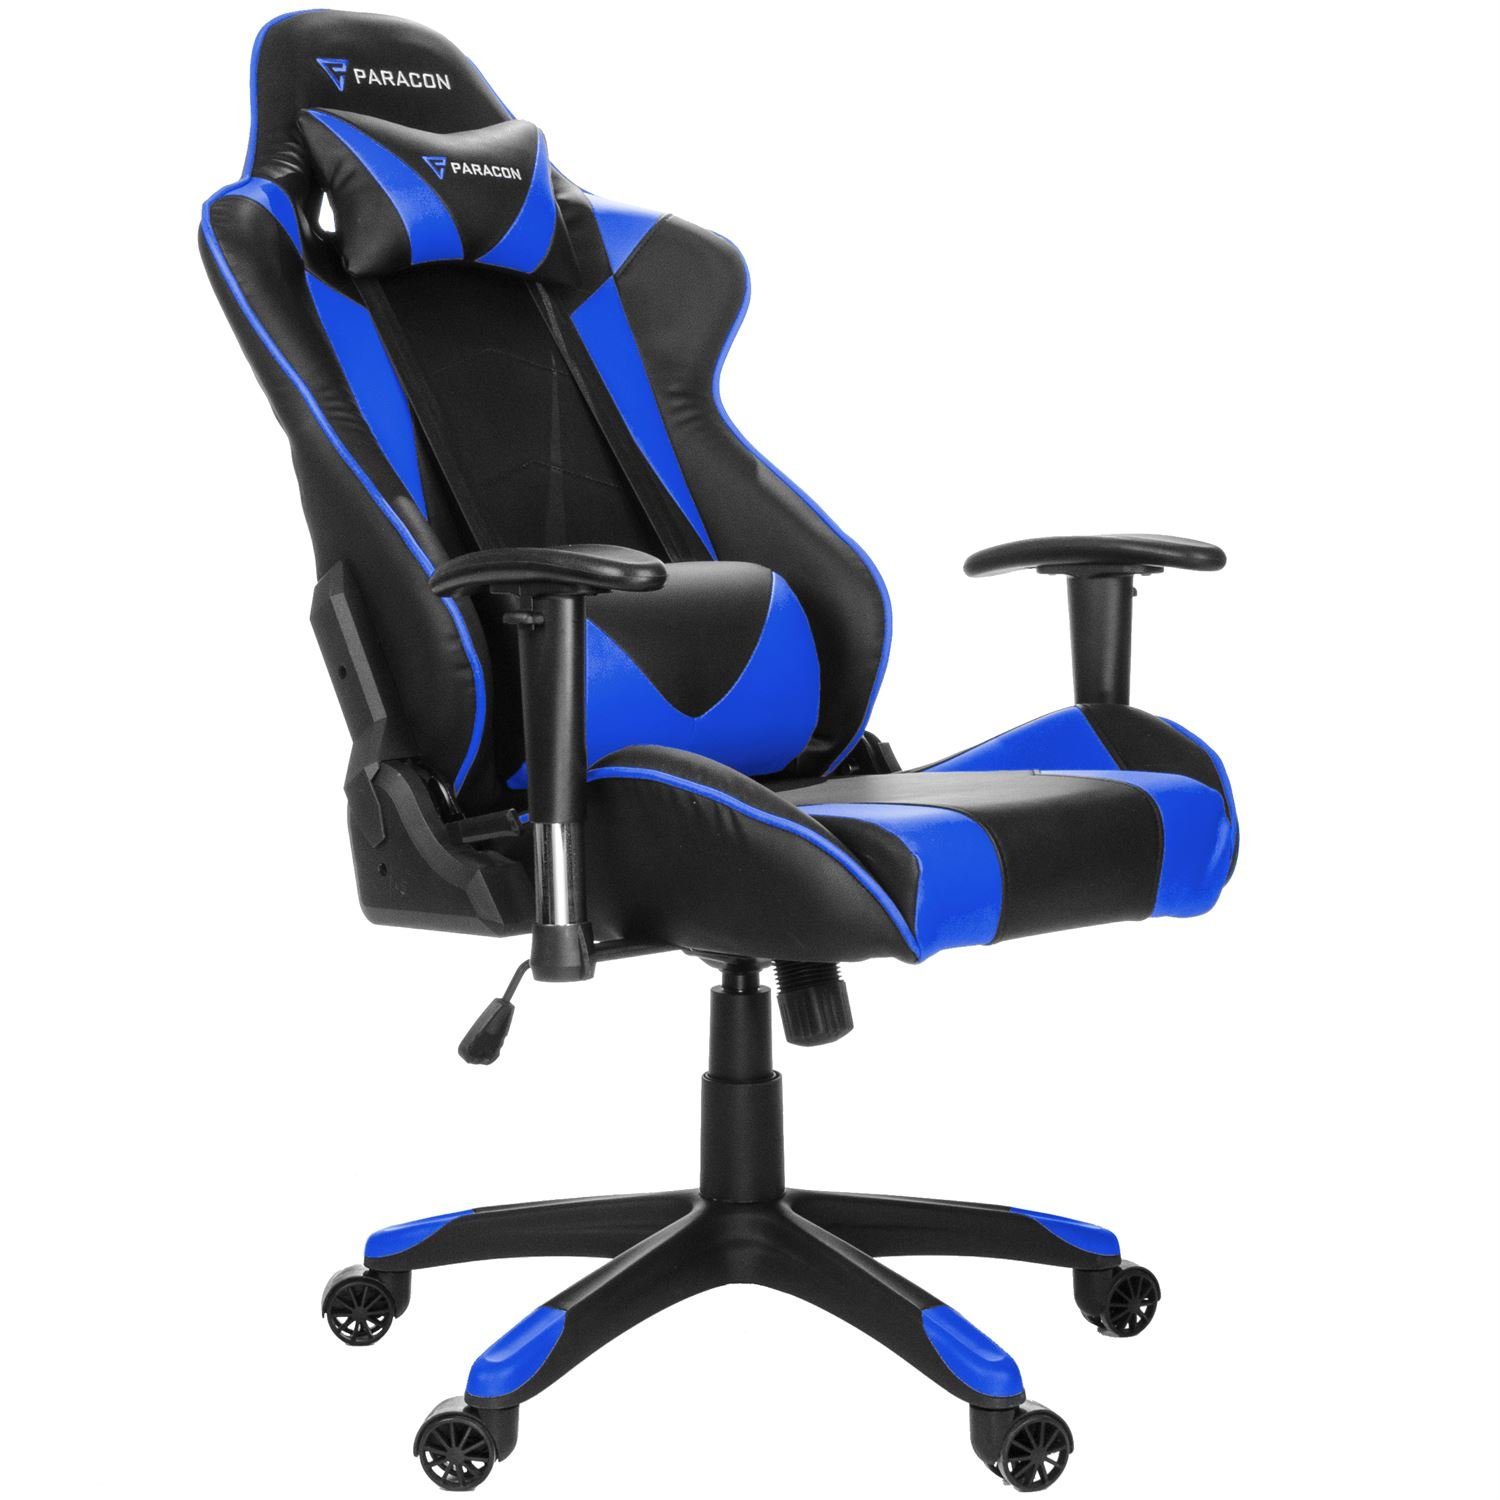 Paracon Knight und Gaming-Stuhl ebuy24 Blau Stuhl Gaming inkl. Nackenkissen